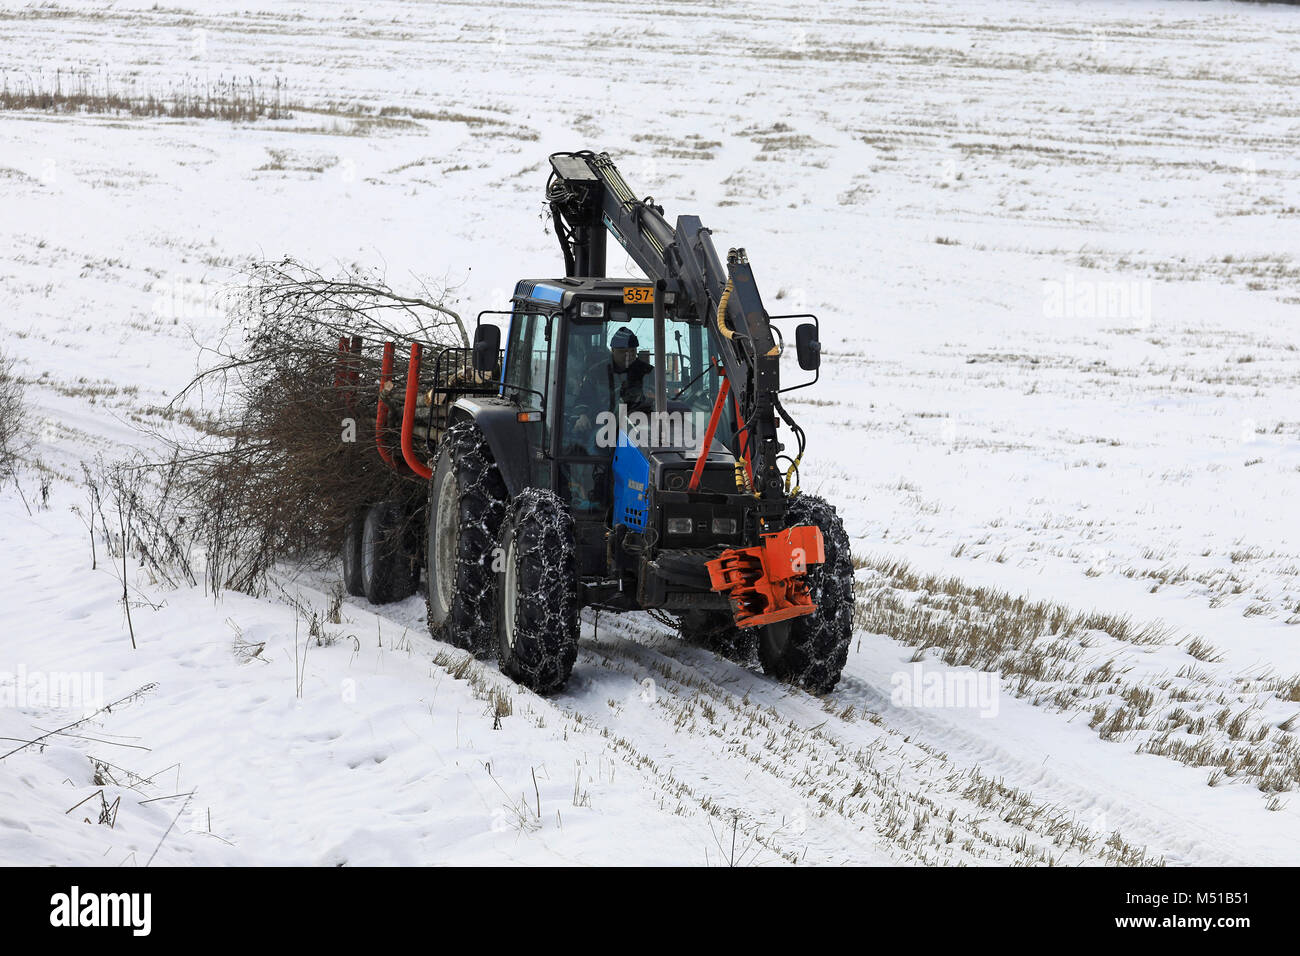 SALO, FINLANDE - le 16 février 2018 : agriculteur transporte une charge de broussailles avec Valmet Valtra tracteur et remorque forestière le long du côté d'un champ neigeux Banque D'Images